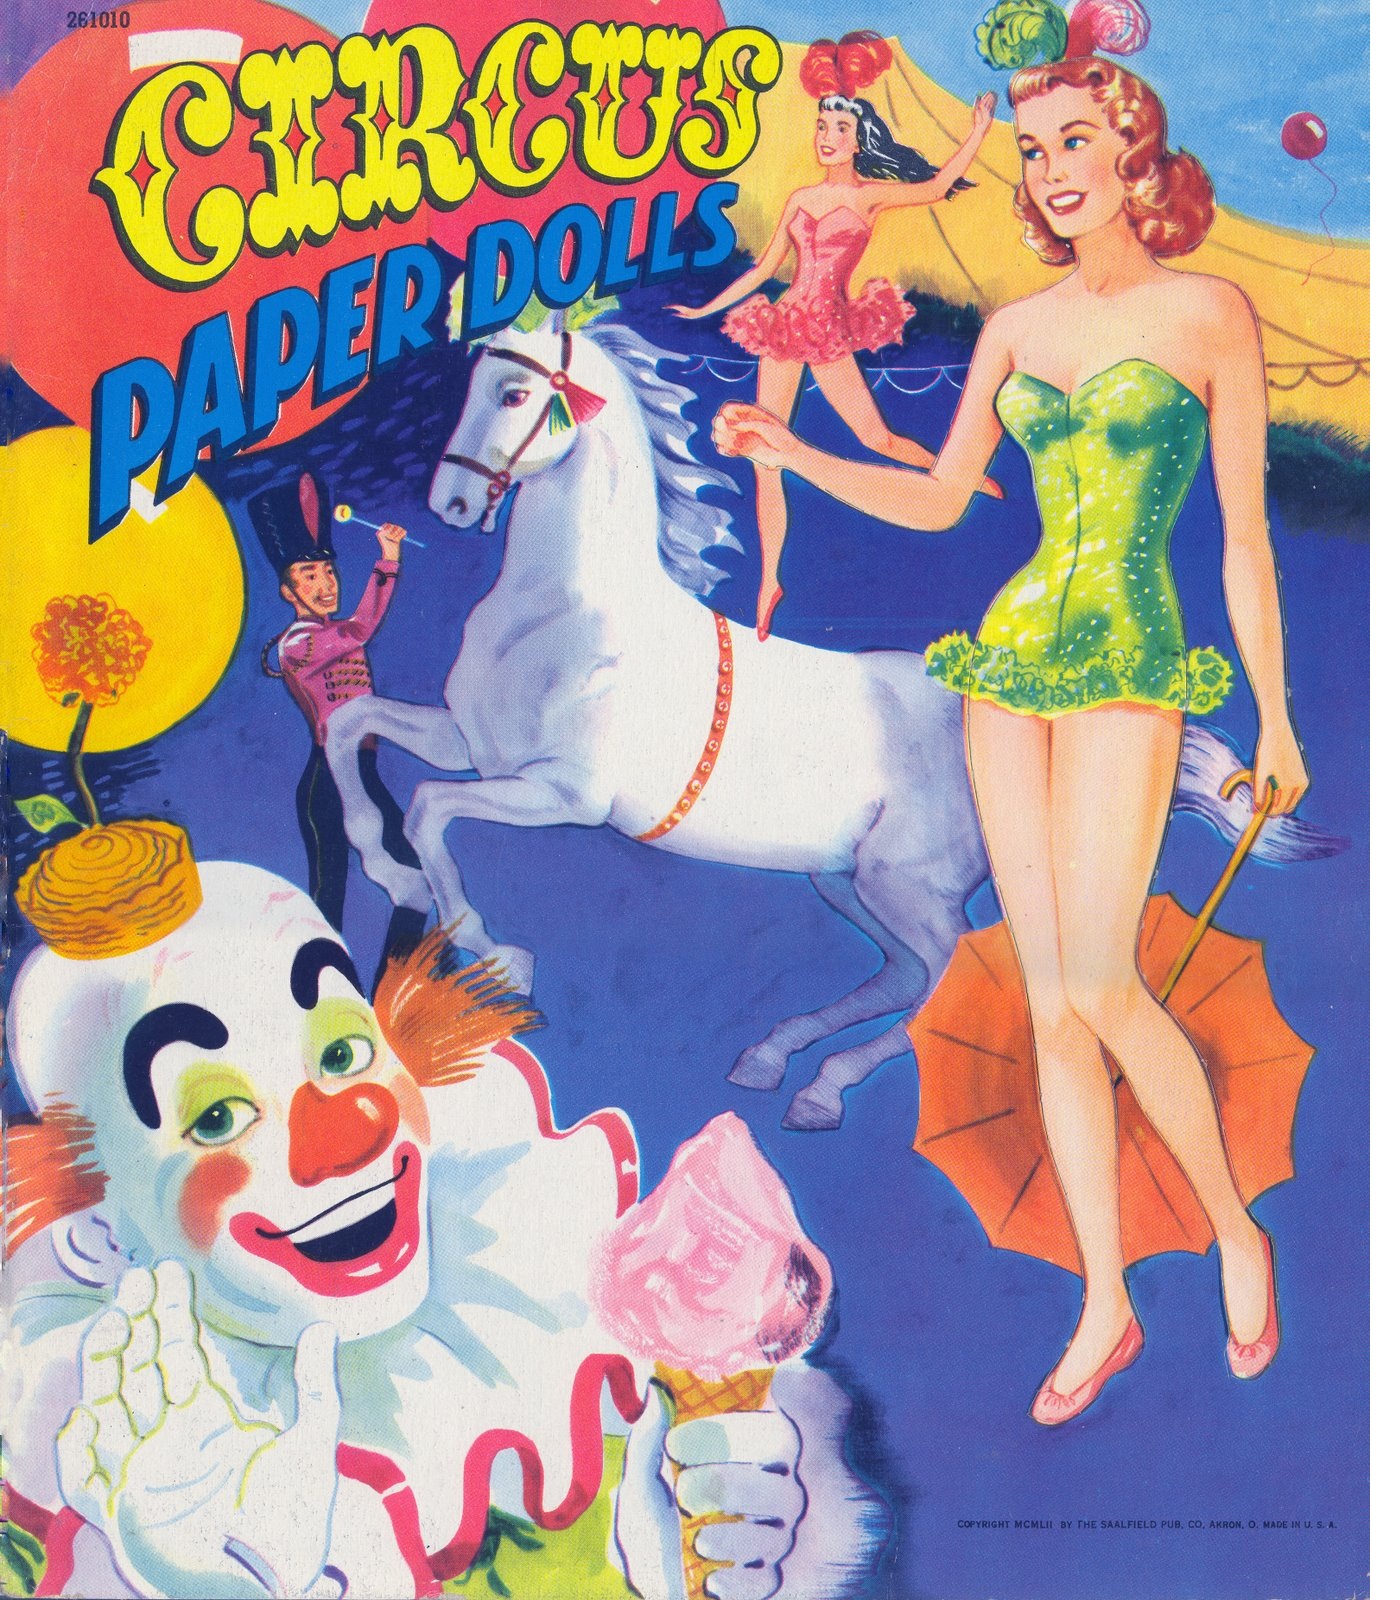 ... /AAAAAAAAQOg/GkR-YS3aXBk/s1600/Circus+Paper+Dolls+1952+Saal+front.jpg